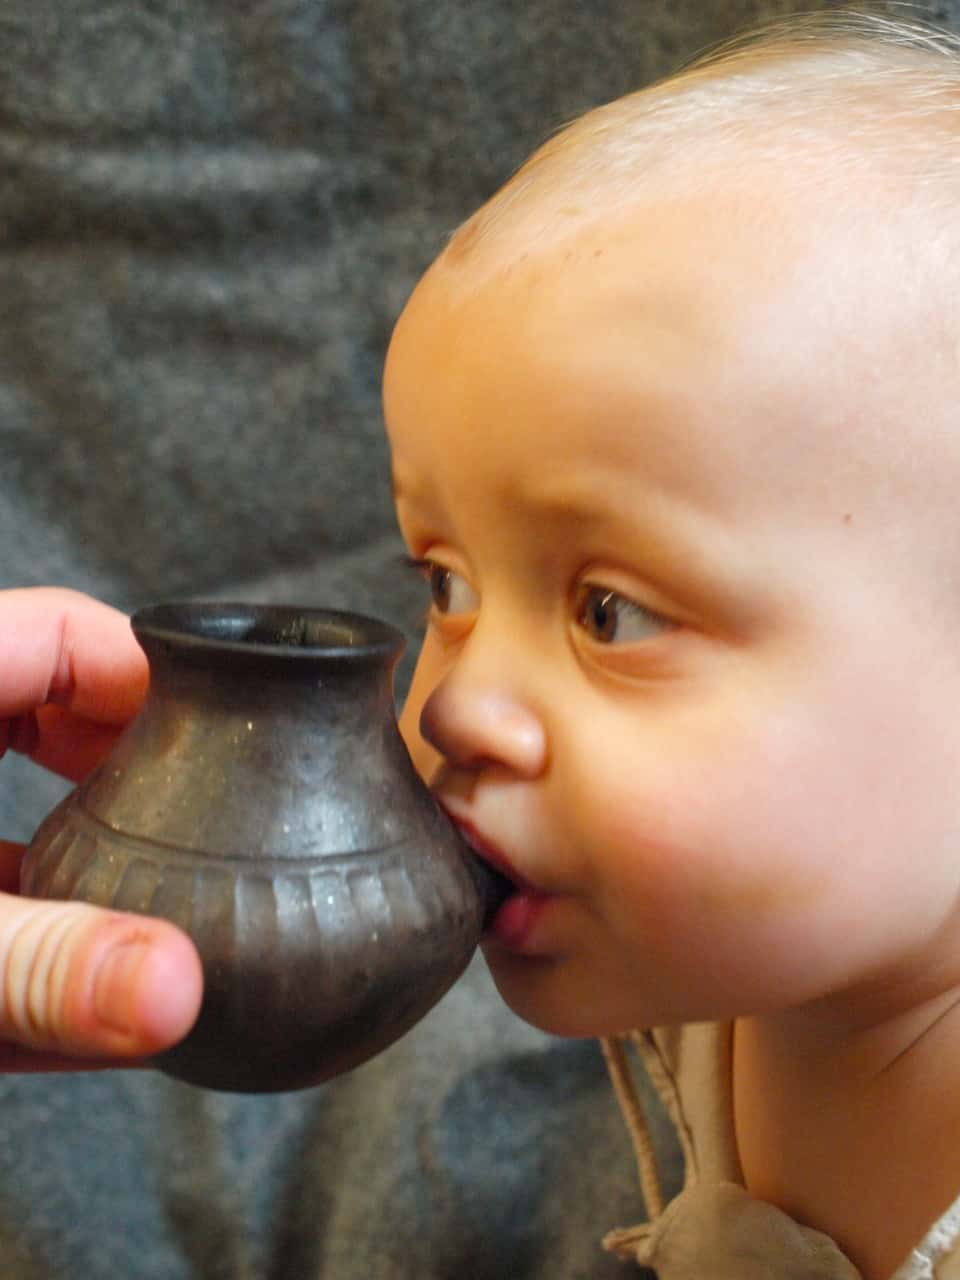 طفل يشرب الحليب من آنية شبيهة بتلك التي عُثر عليها. صورة: Helena Seidl da Fonseca